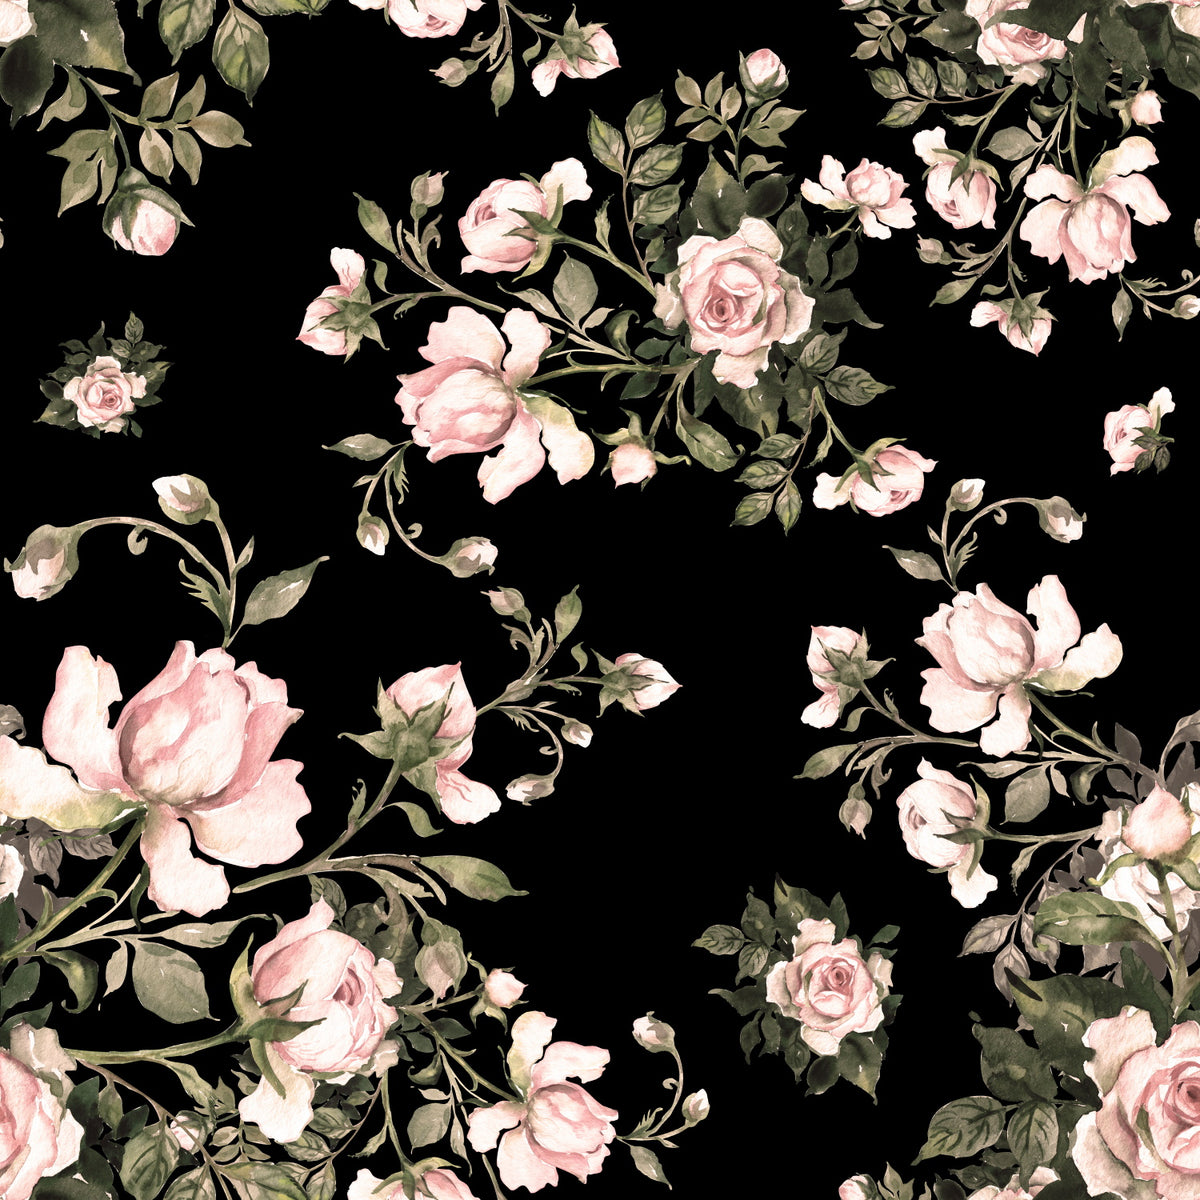 Midnight Blossom - 808 WALL ART